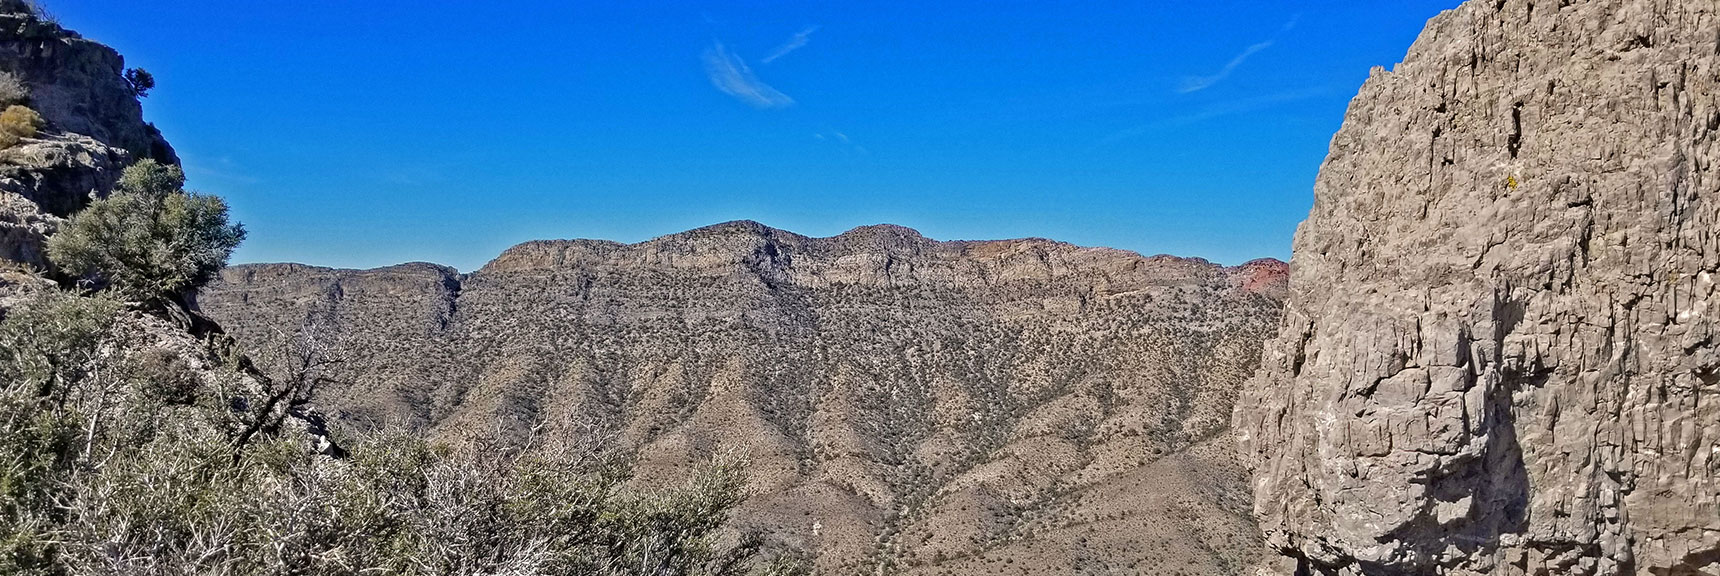 View Through Cliff Opening to Far Side of Potosi Canyon | Potosi Mt. Summit via Western Cliffs Ridgeline, Spring Mountains, Nevada